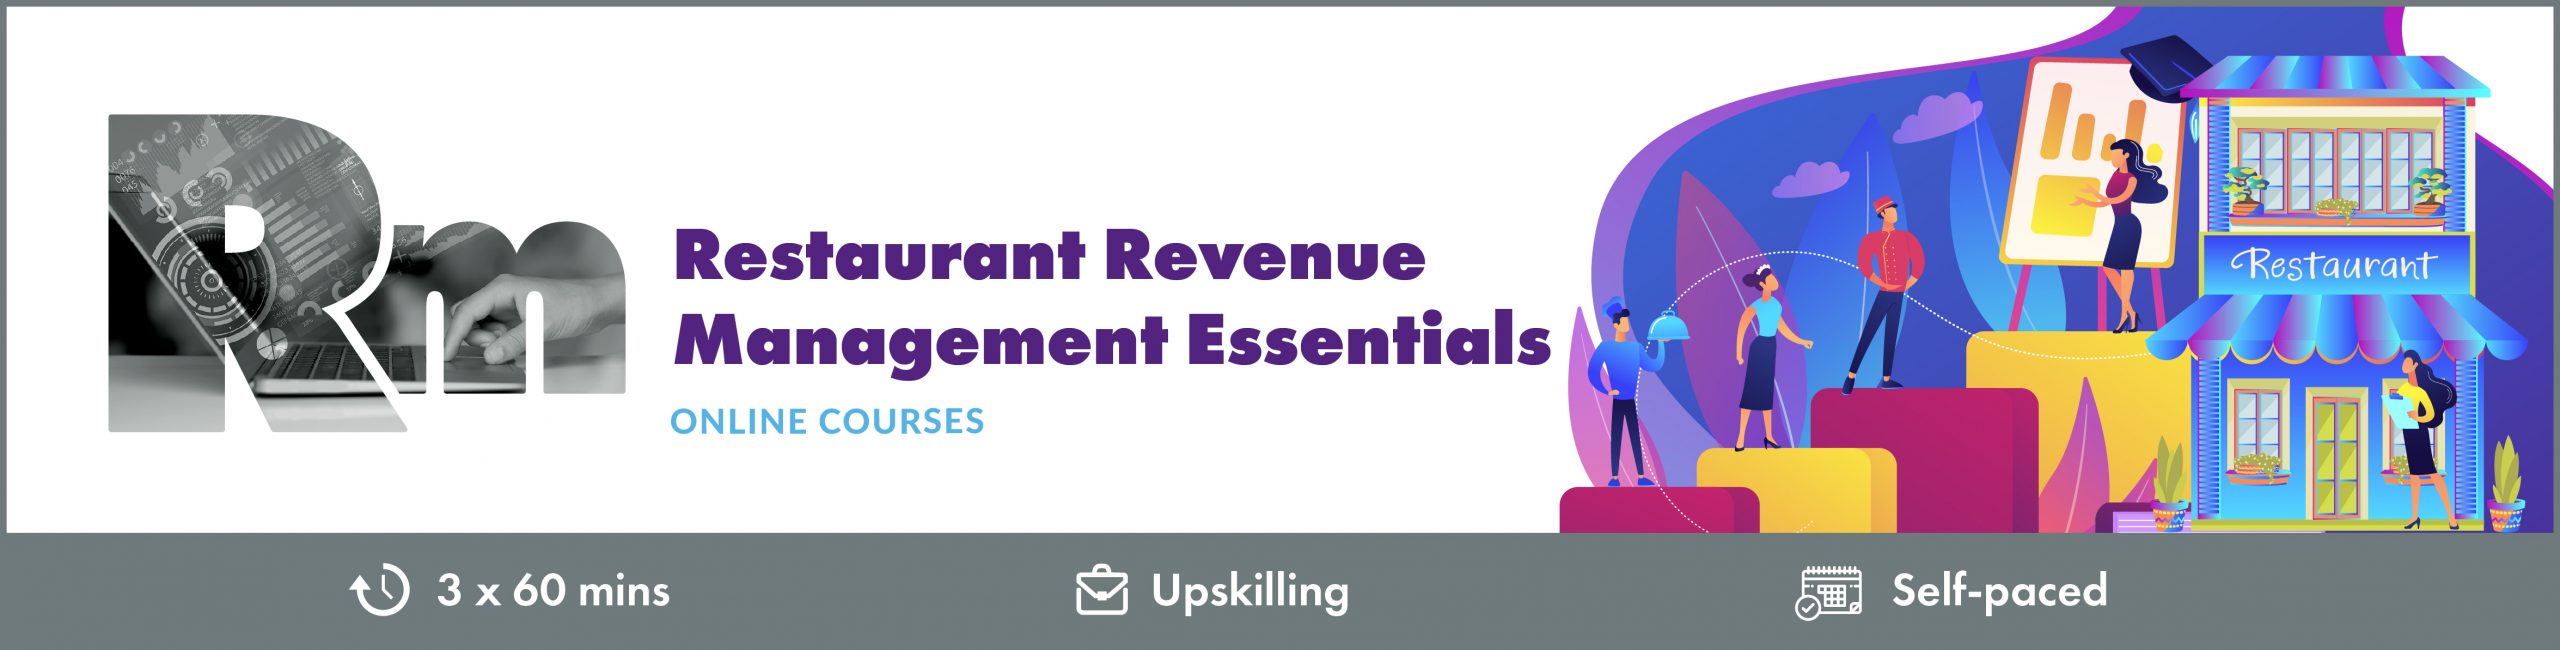 Restaurant Revenue Management Essentials Courses